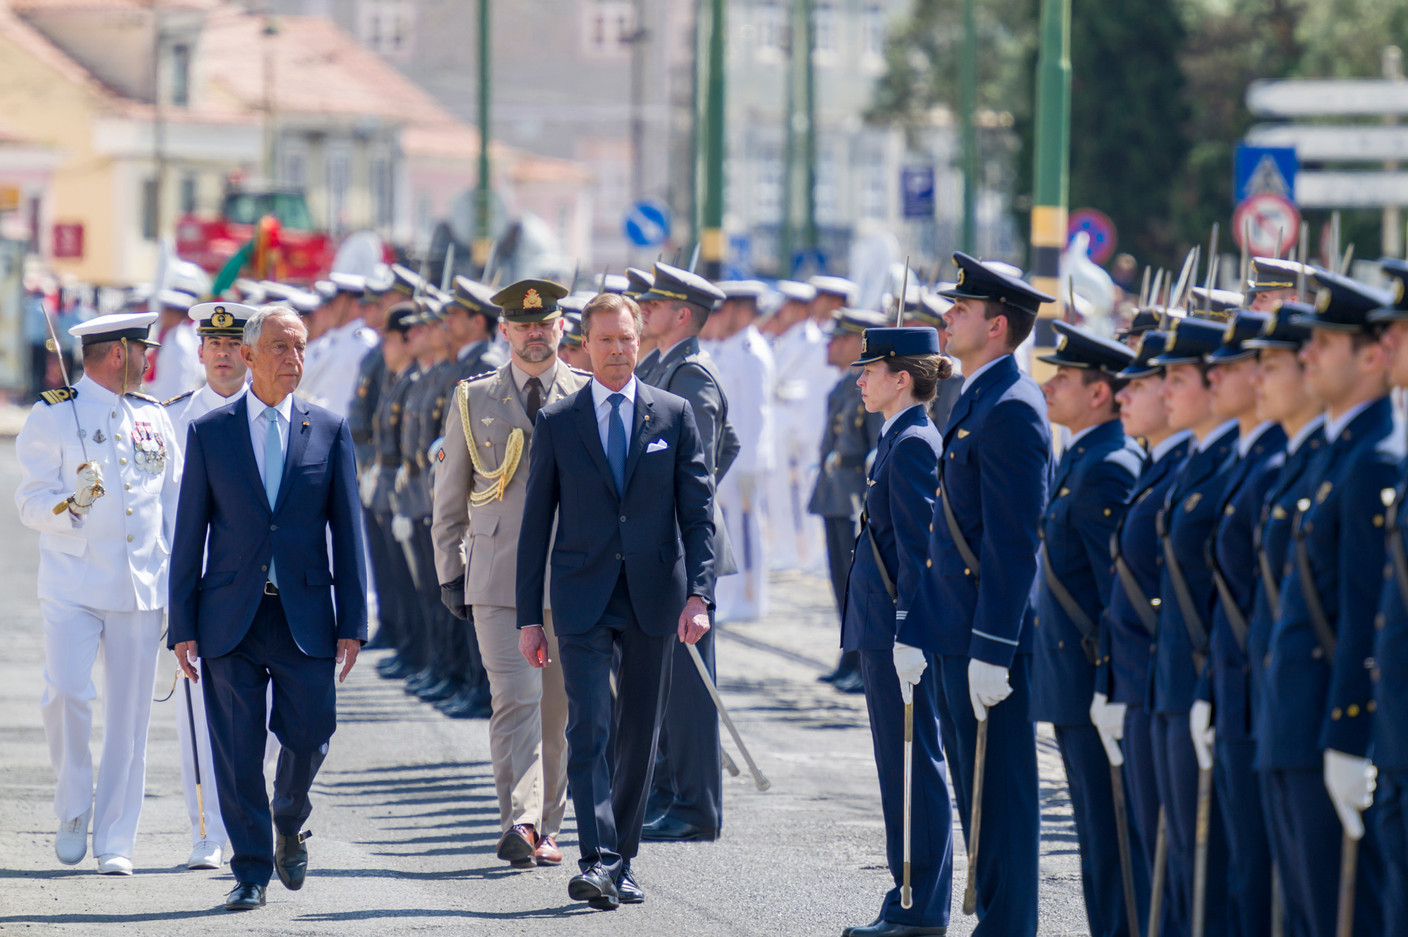 Marcelo Rebelo de Sousa, président de la République portugaise, a reçu le Grand-Duc avec les honneurs.  (Photo: SIP/Jean-Christophe Verhaegen)